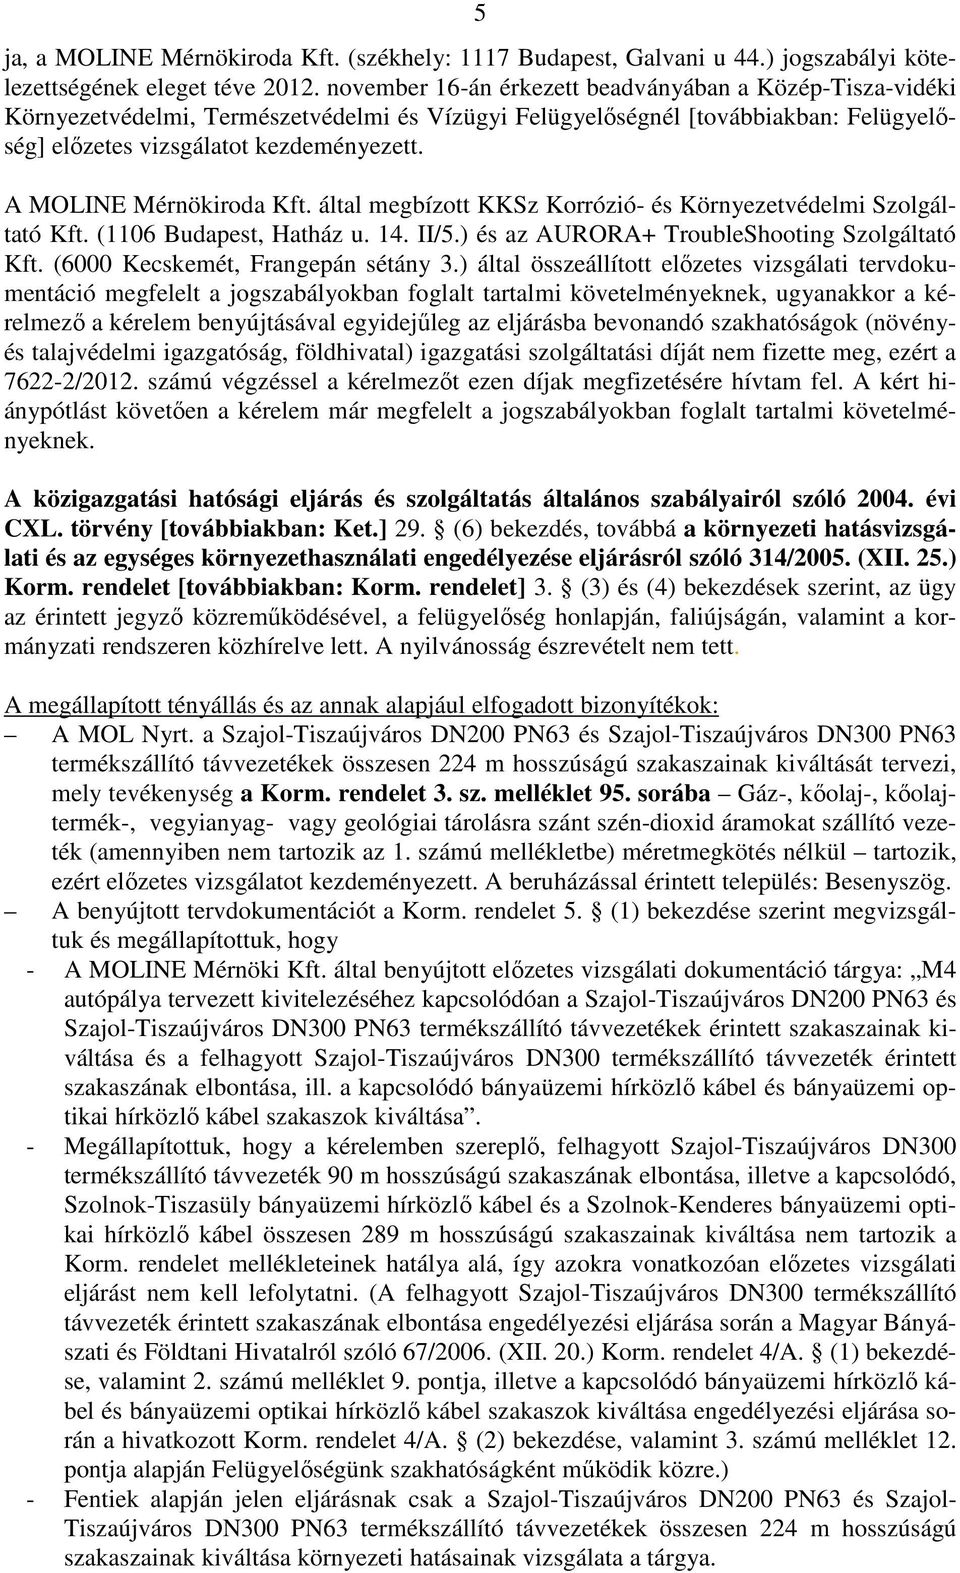 A MOLINE Mérnökiroda Kft. által megbízott KKSz Korrózió- és Környezetvédelmi Szolgáltató Kft. (1106 Budapest, Hatház u. 14. II/5.) és az AURORA+ TroubleShooting Szolgáltató Kft.